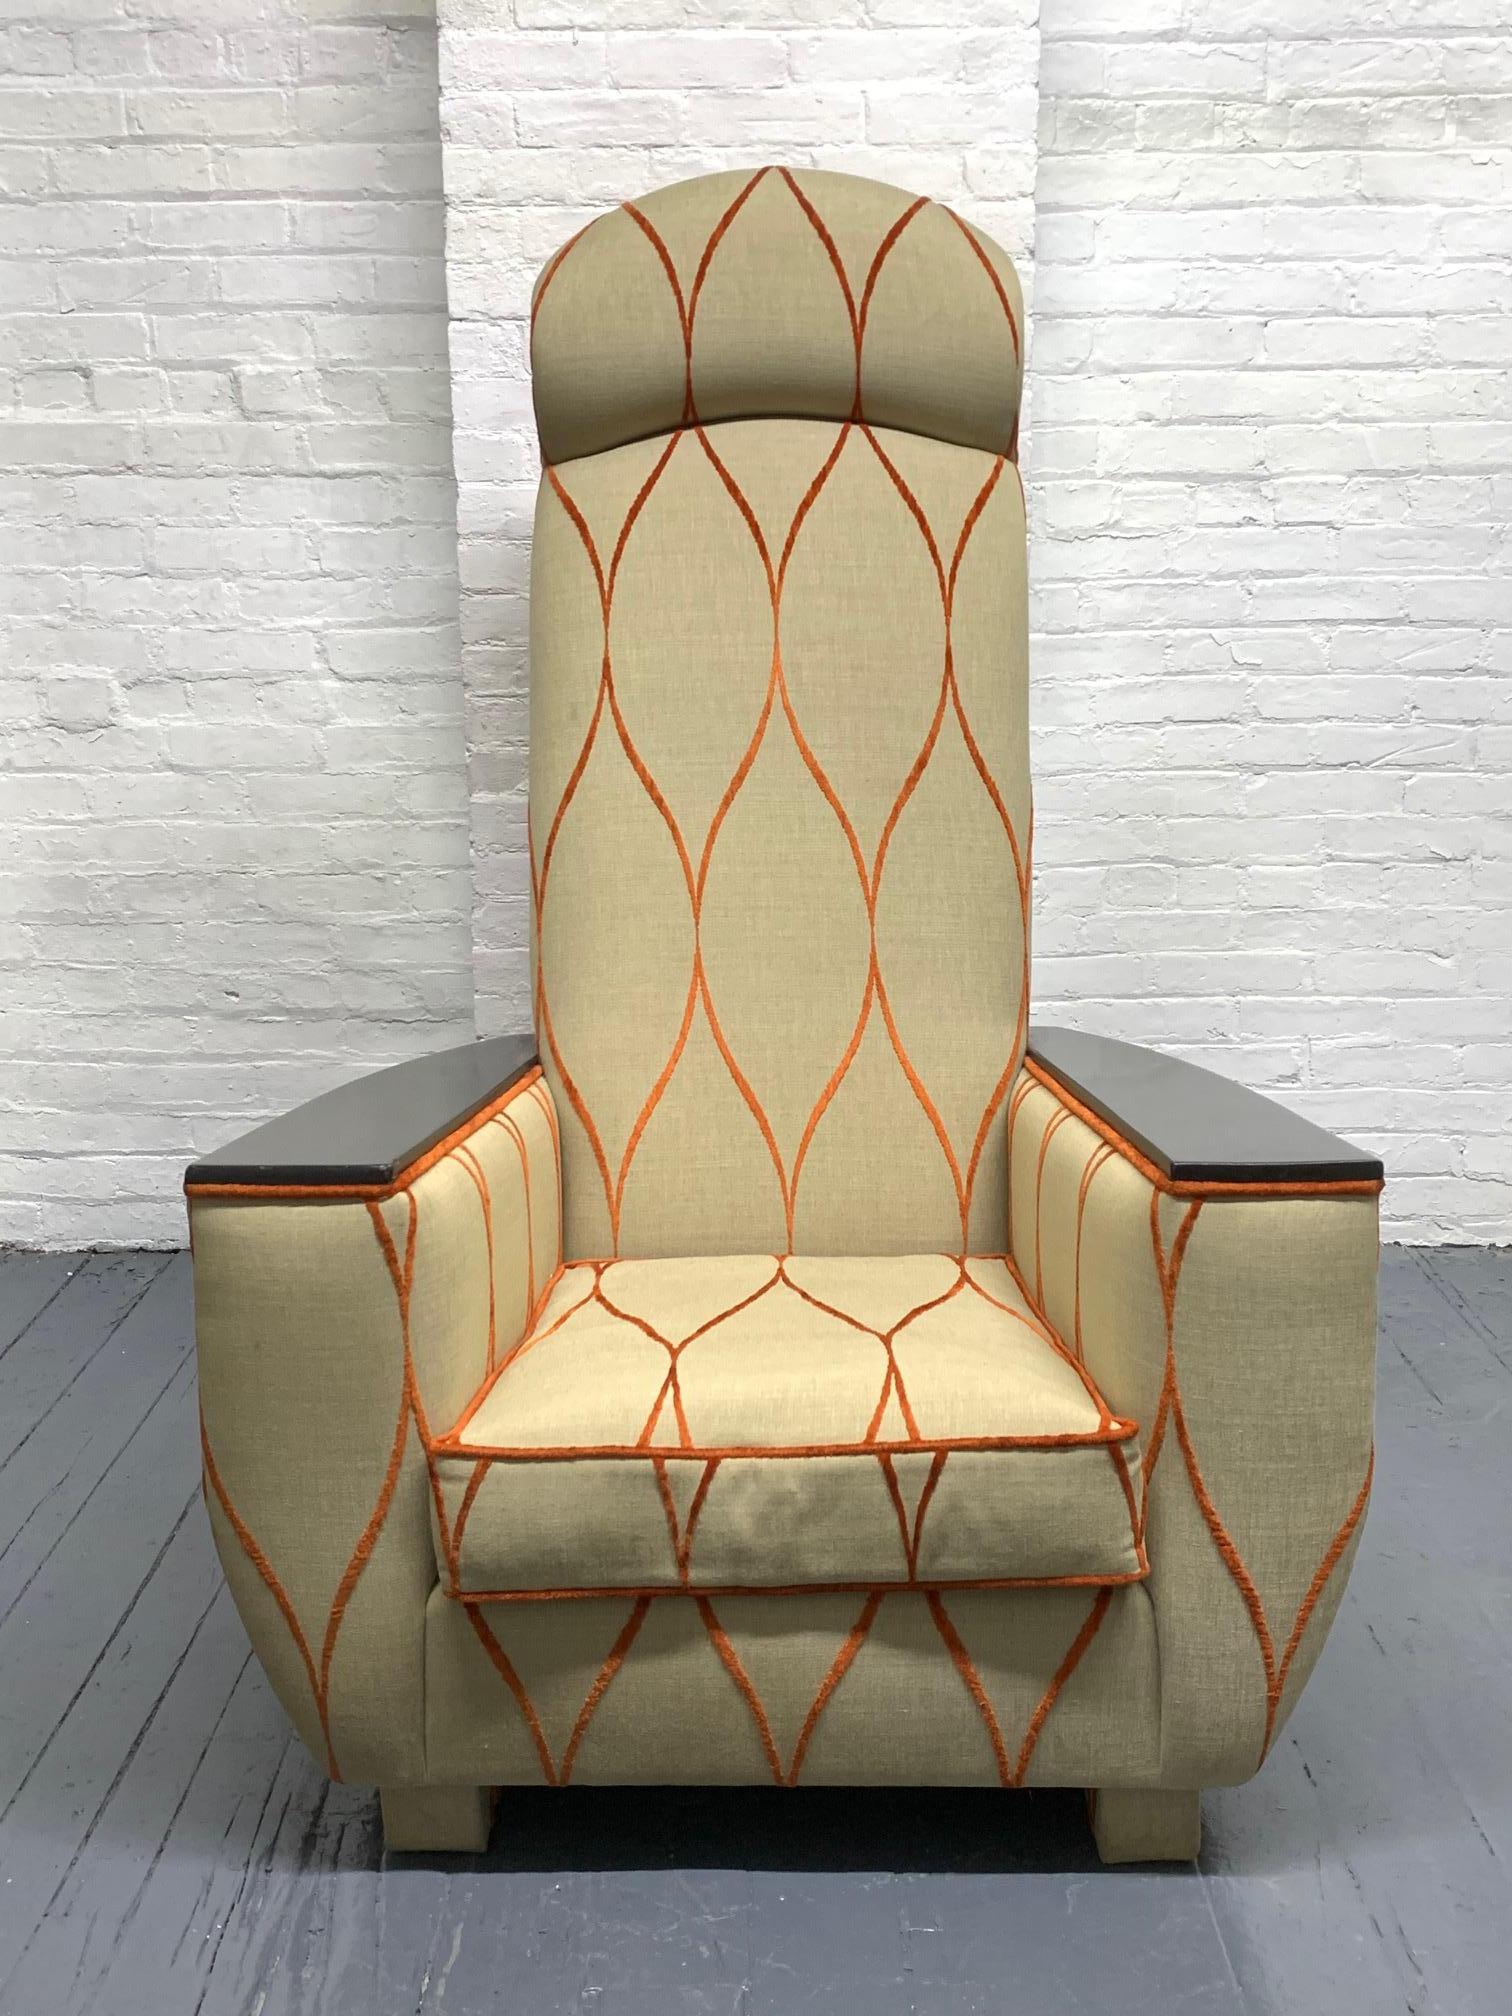 Dekorativer moderner Lounge- oder Sessel mit hoher Rückenlehne. Die Rückenlehne des Stuhls ist mit dem originalen orangefarbenen Samtstoff gepolstert. Die Armlehnen sind aus Massivholz und die Beine sind ebenfalls gepolstert.